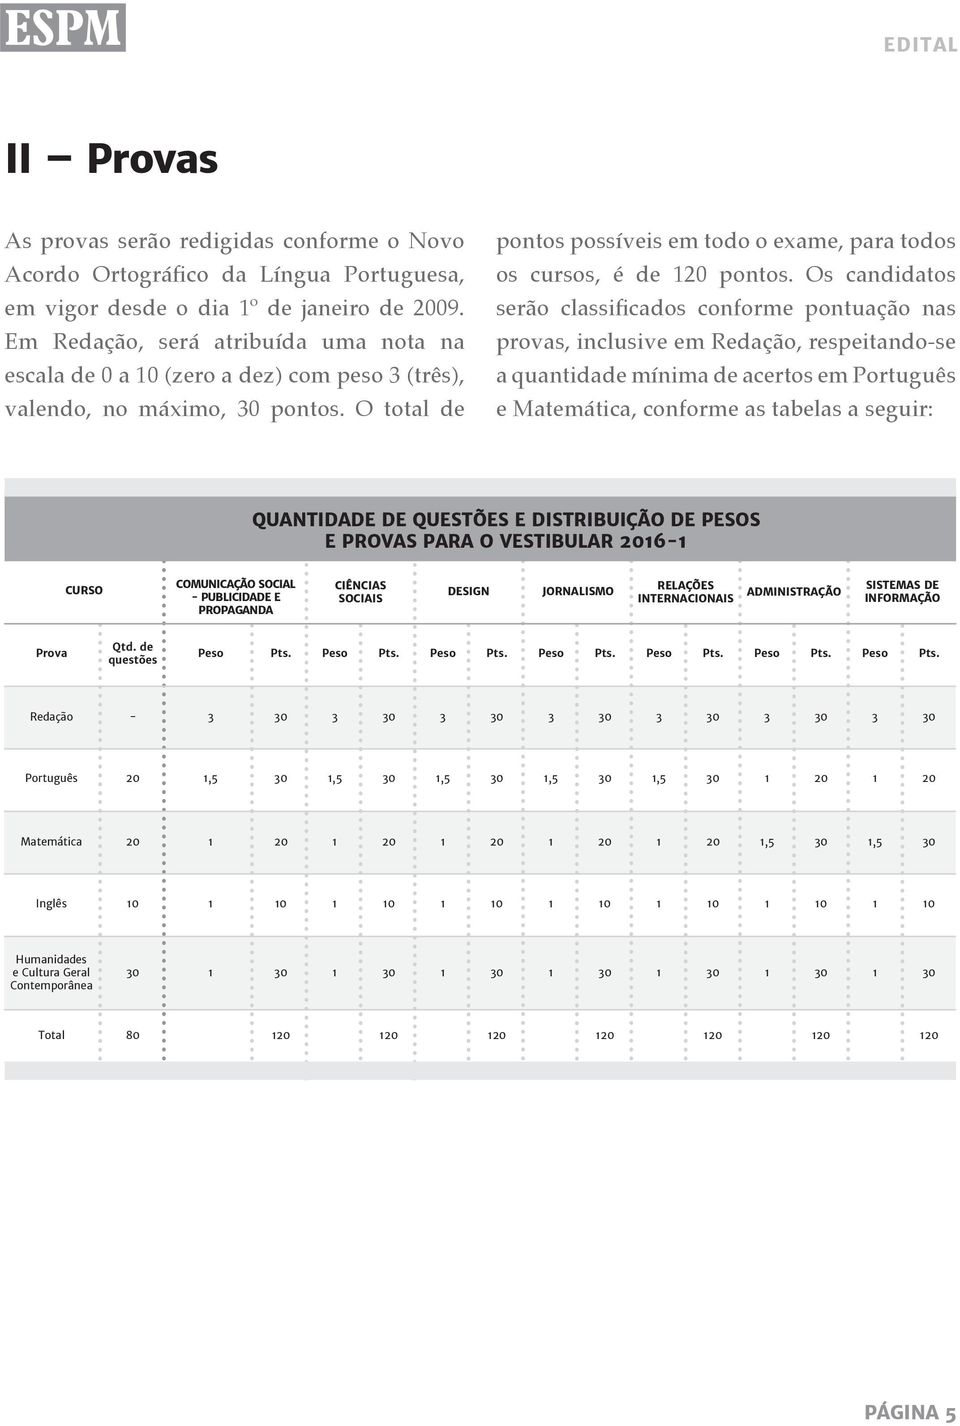 Os candidatos serão classificados conforme pontuação nas provas, inclusive em Redação, respeitando-se a quantidade mínima de acertos em Português e Matemática, conforme as tabelas a seguir: